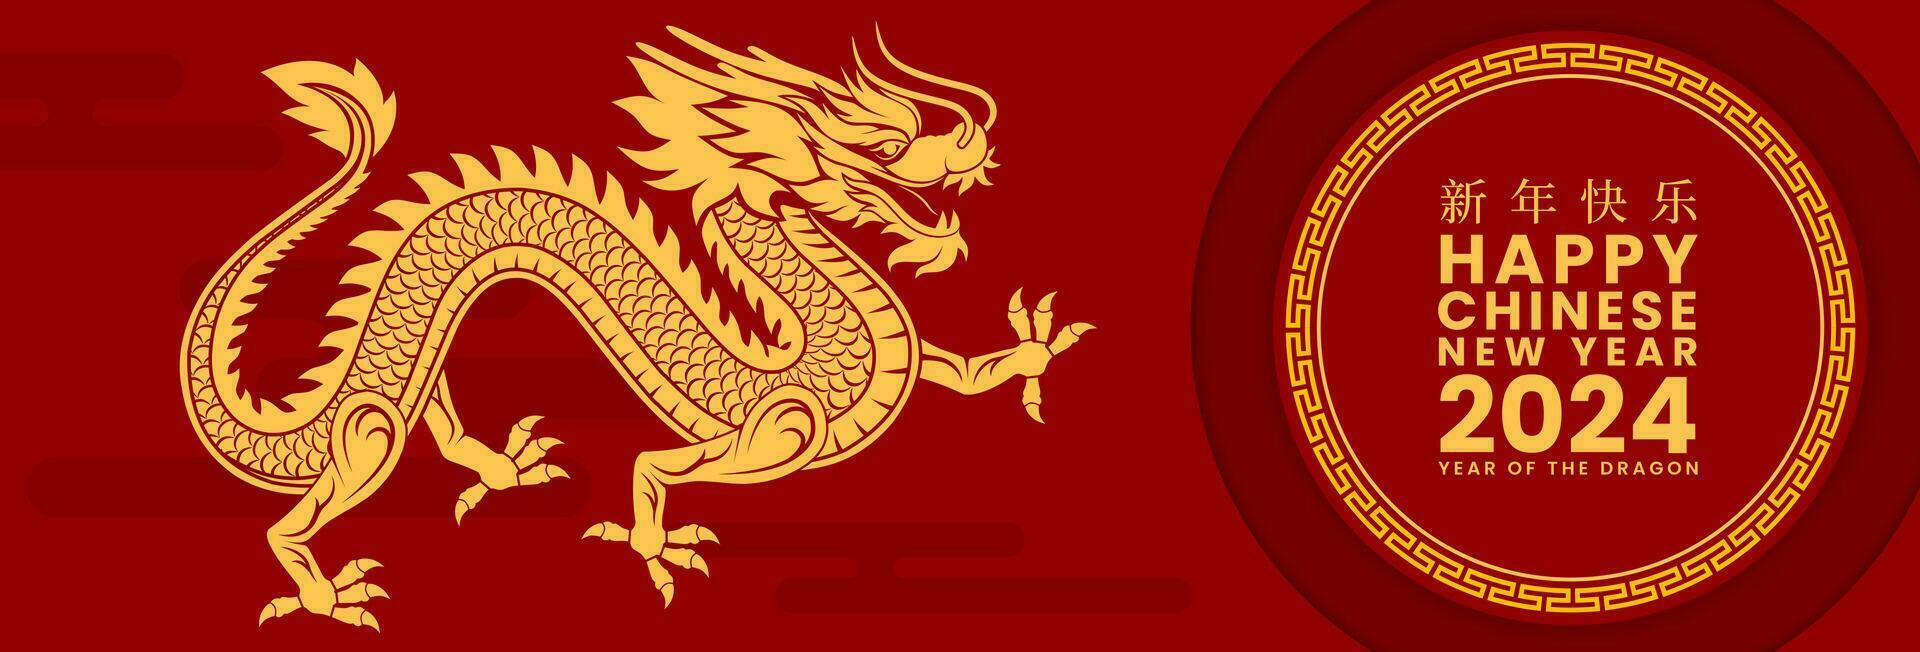 Chinese nieuw jaar 2024, jaar van de draak spandoek. 2024 maan- achtergrond ontwerp met draak, lantaarn en decoratief element. vector illustratie